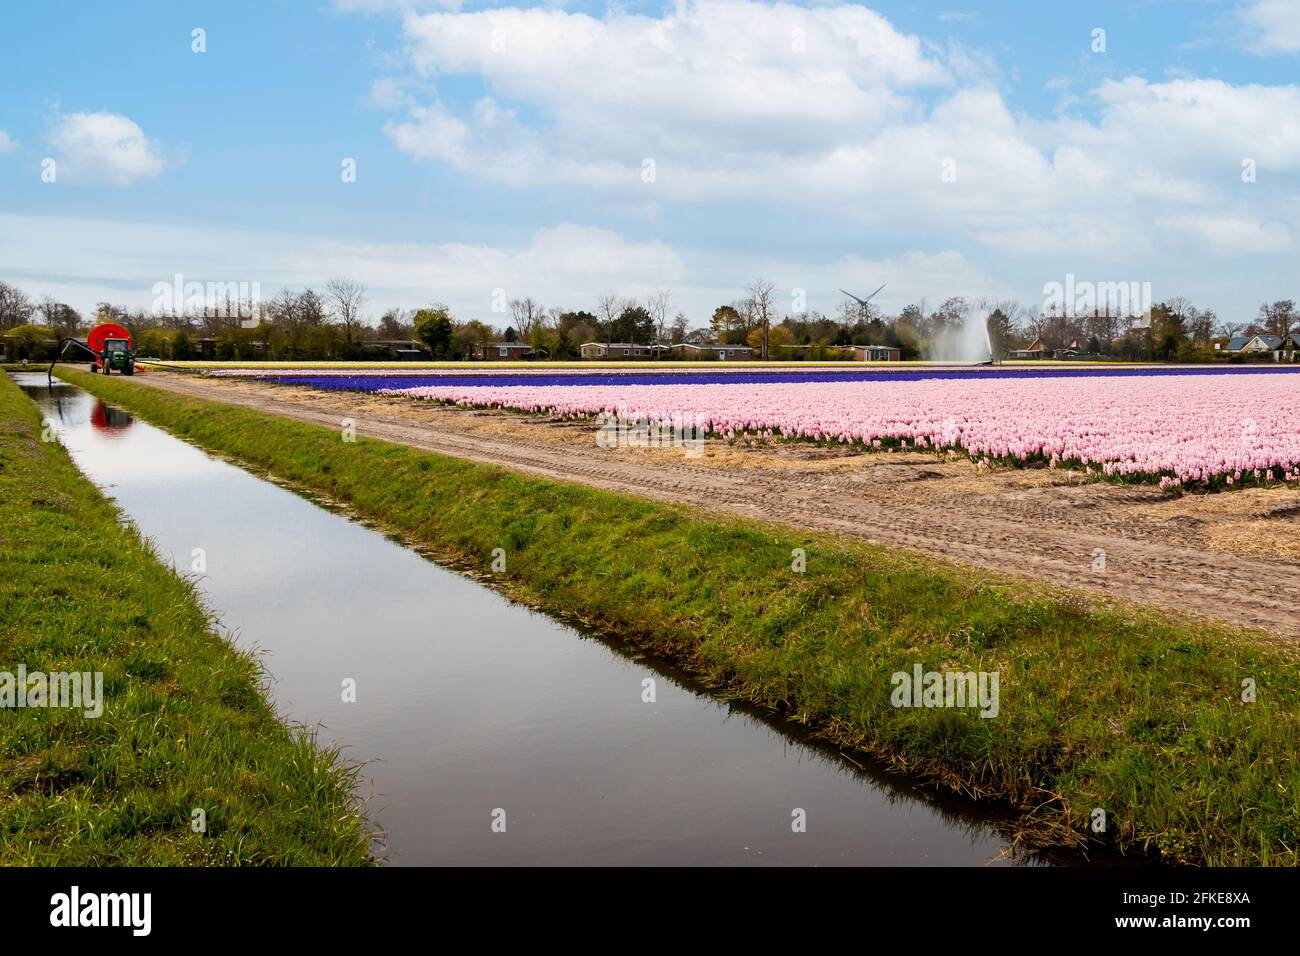 Felder voll von bunten Hyazinthen und berauschenden Düften, Provinz Nordholland, Niederlande Stockfoto